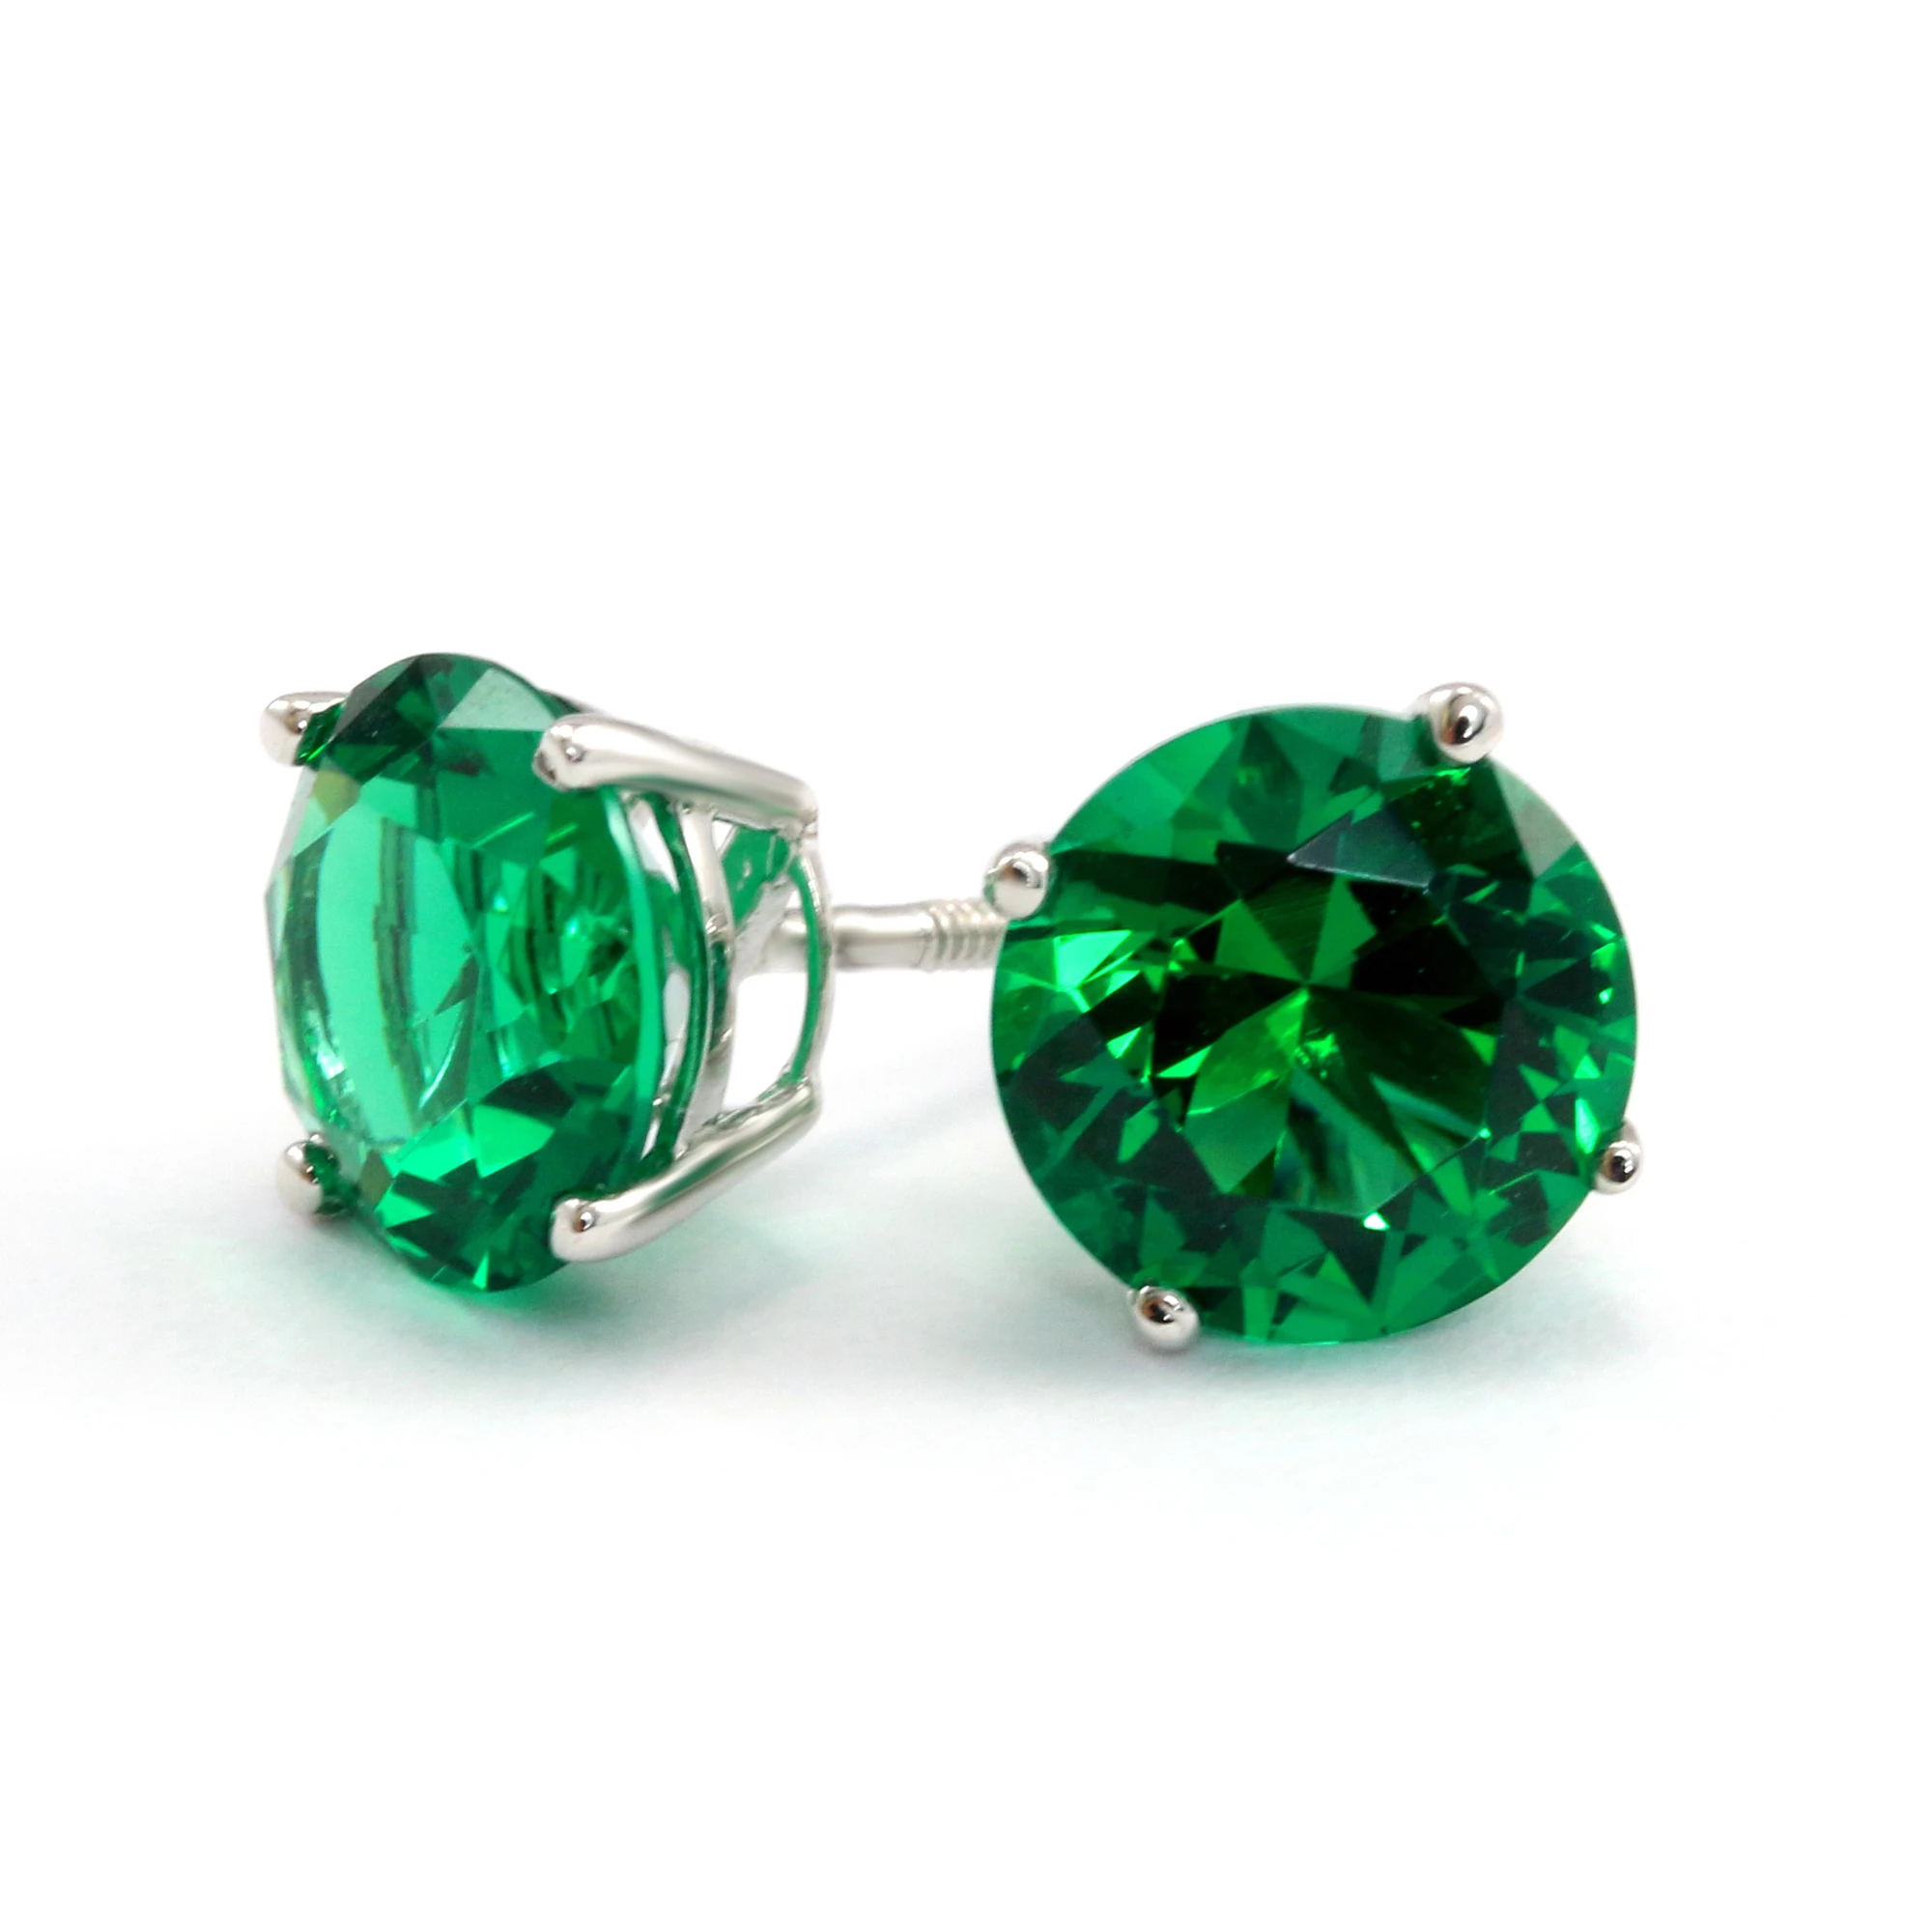 Green earrings for luck